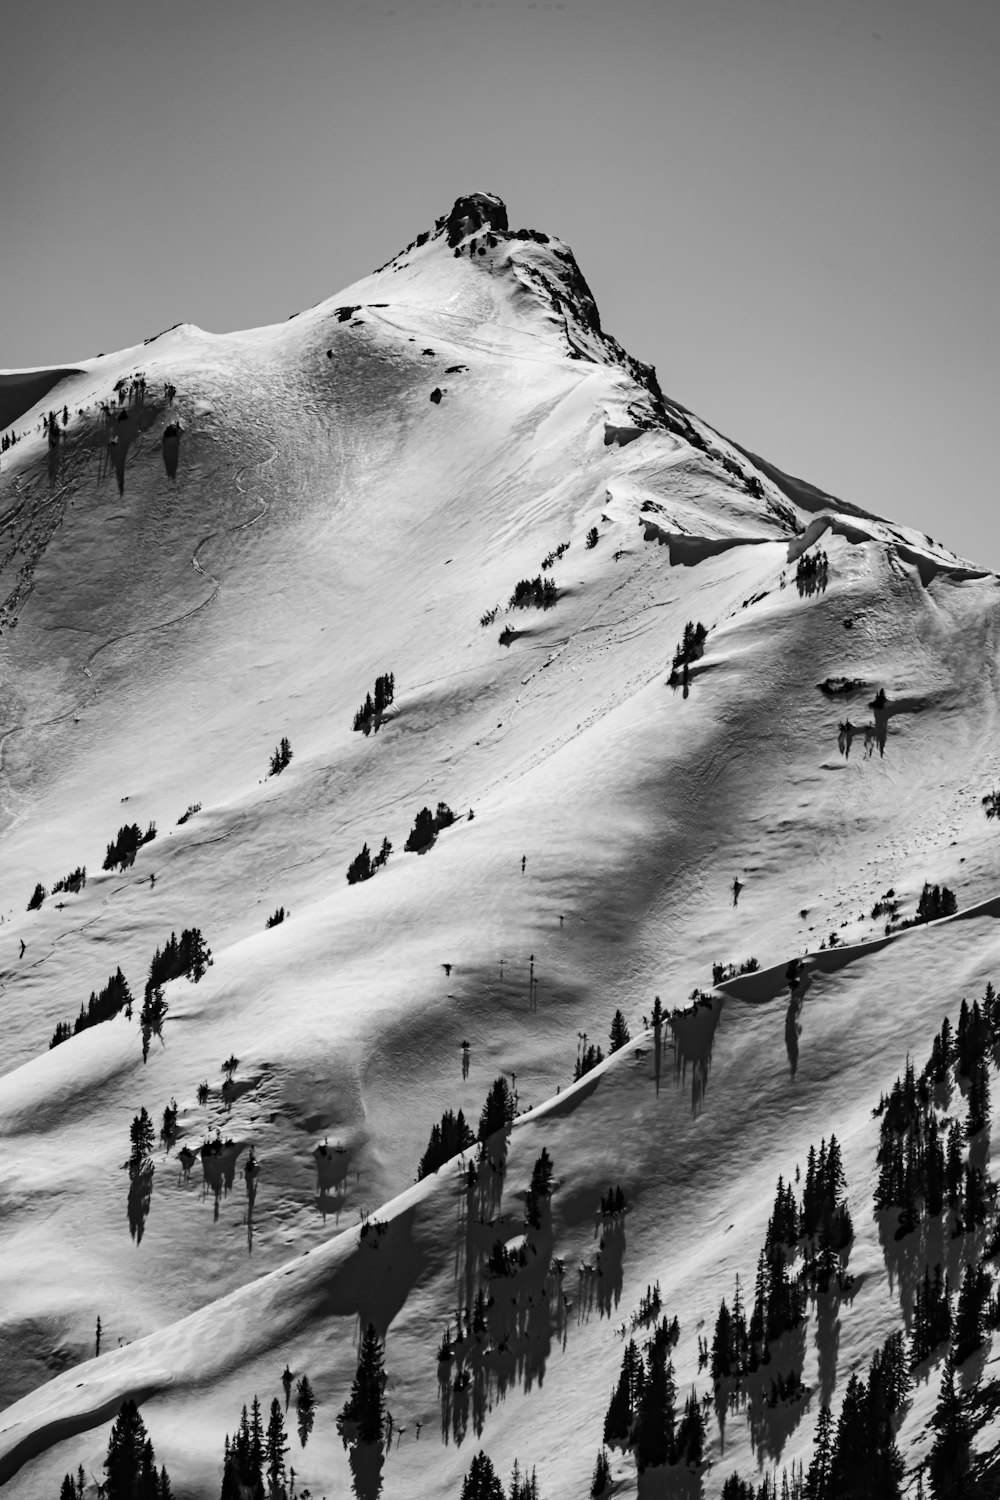 눈 덮인 산을 걷는 사람들의 그레이스케일 사진